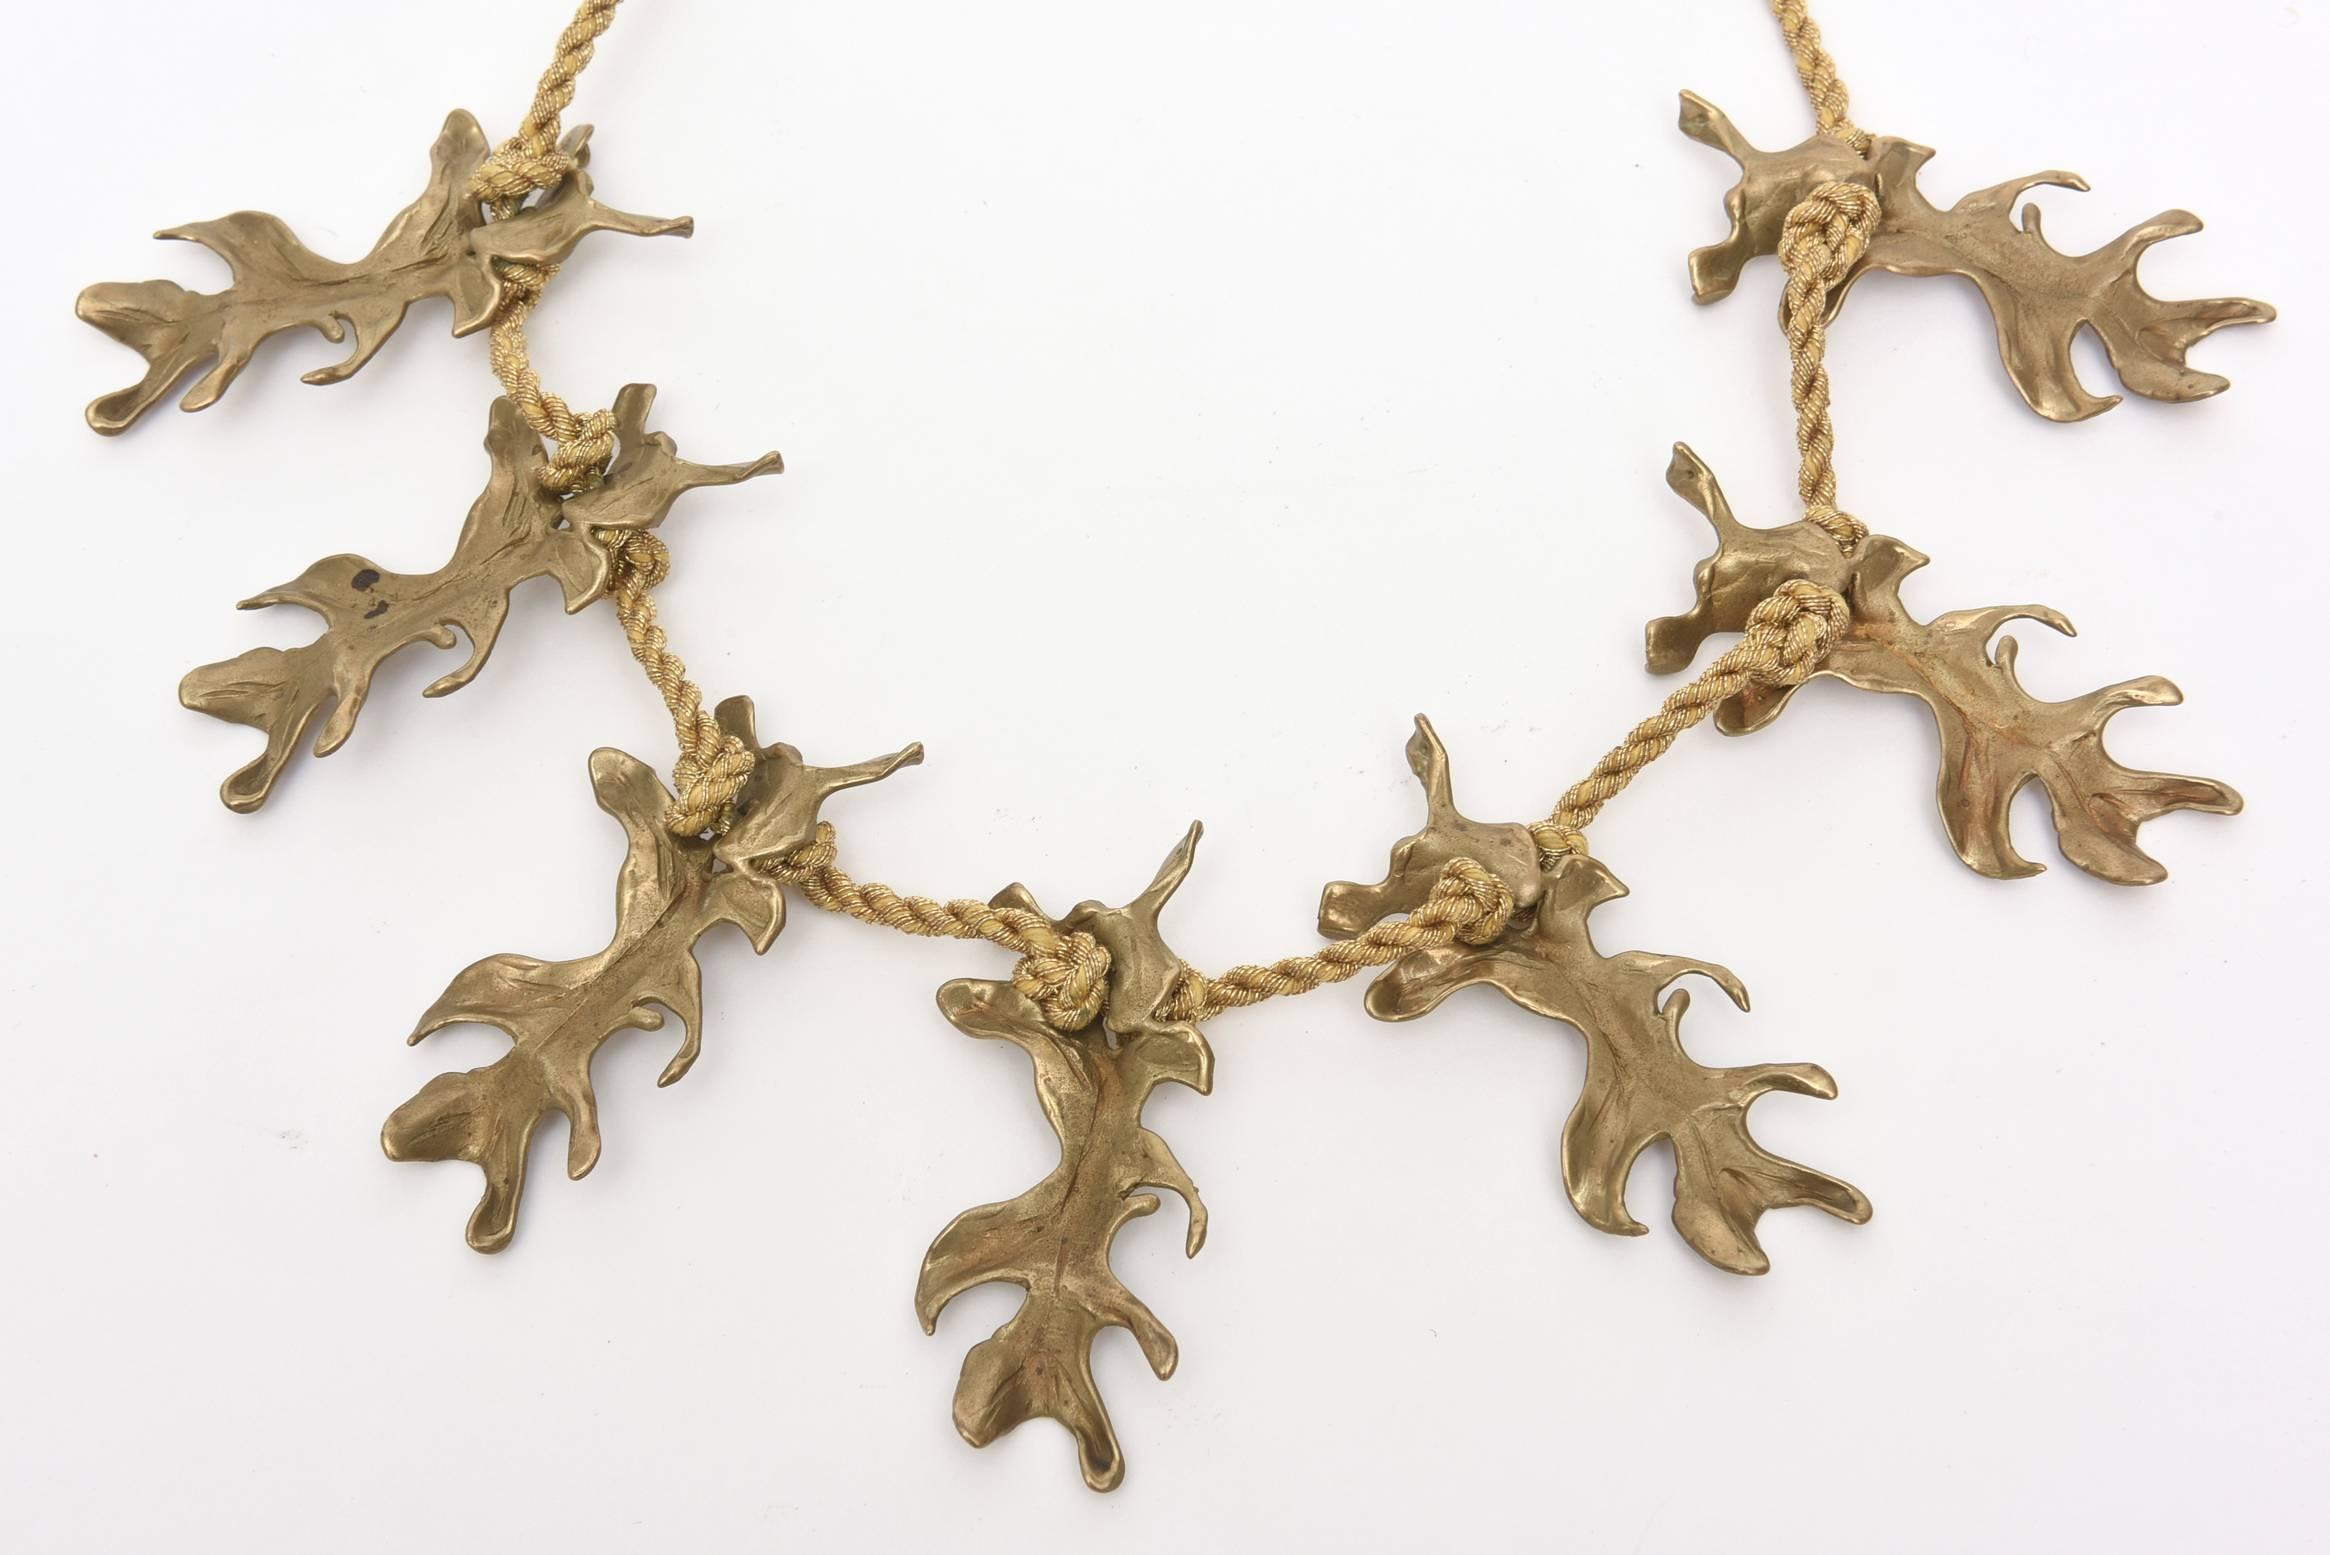 Ce collier vintage de Mary McFadden possède une belle corde tressée en soie métallique dorée qui abrite les 6 pendentifs en bronze qui y sont suspendus. Les pendentifs en bronze en forme de feuille sont comme des petits morceaux de sculpture